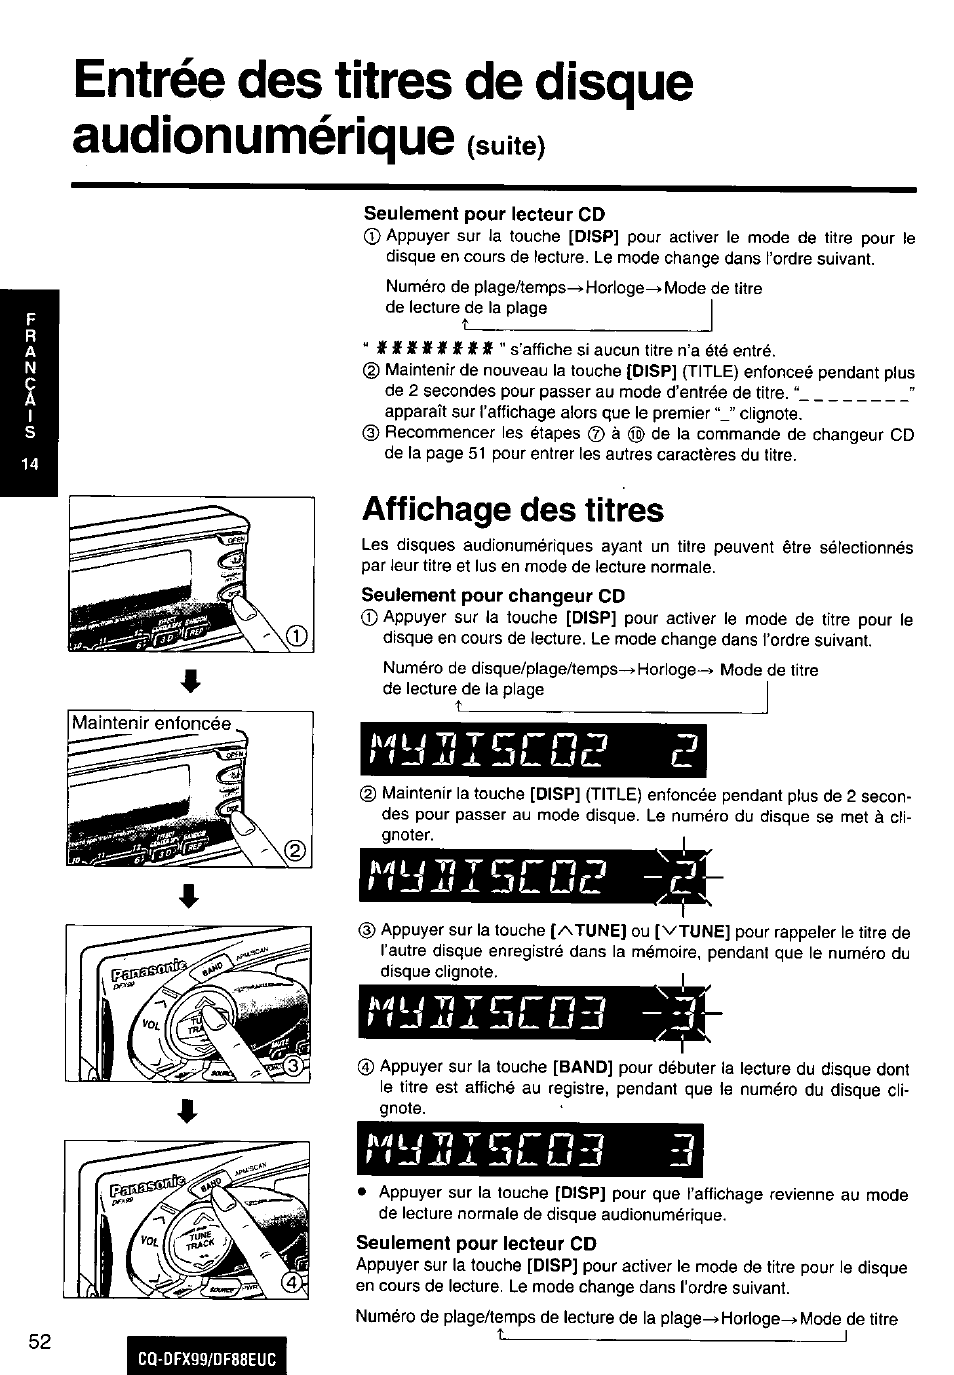 Entrée des titres de disque audionumérique (suite), Affichage des titres, L\/i | Panasonic CQ-DFX88EUC Manuel d'utilisation | Page 52 / 72